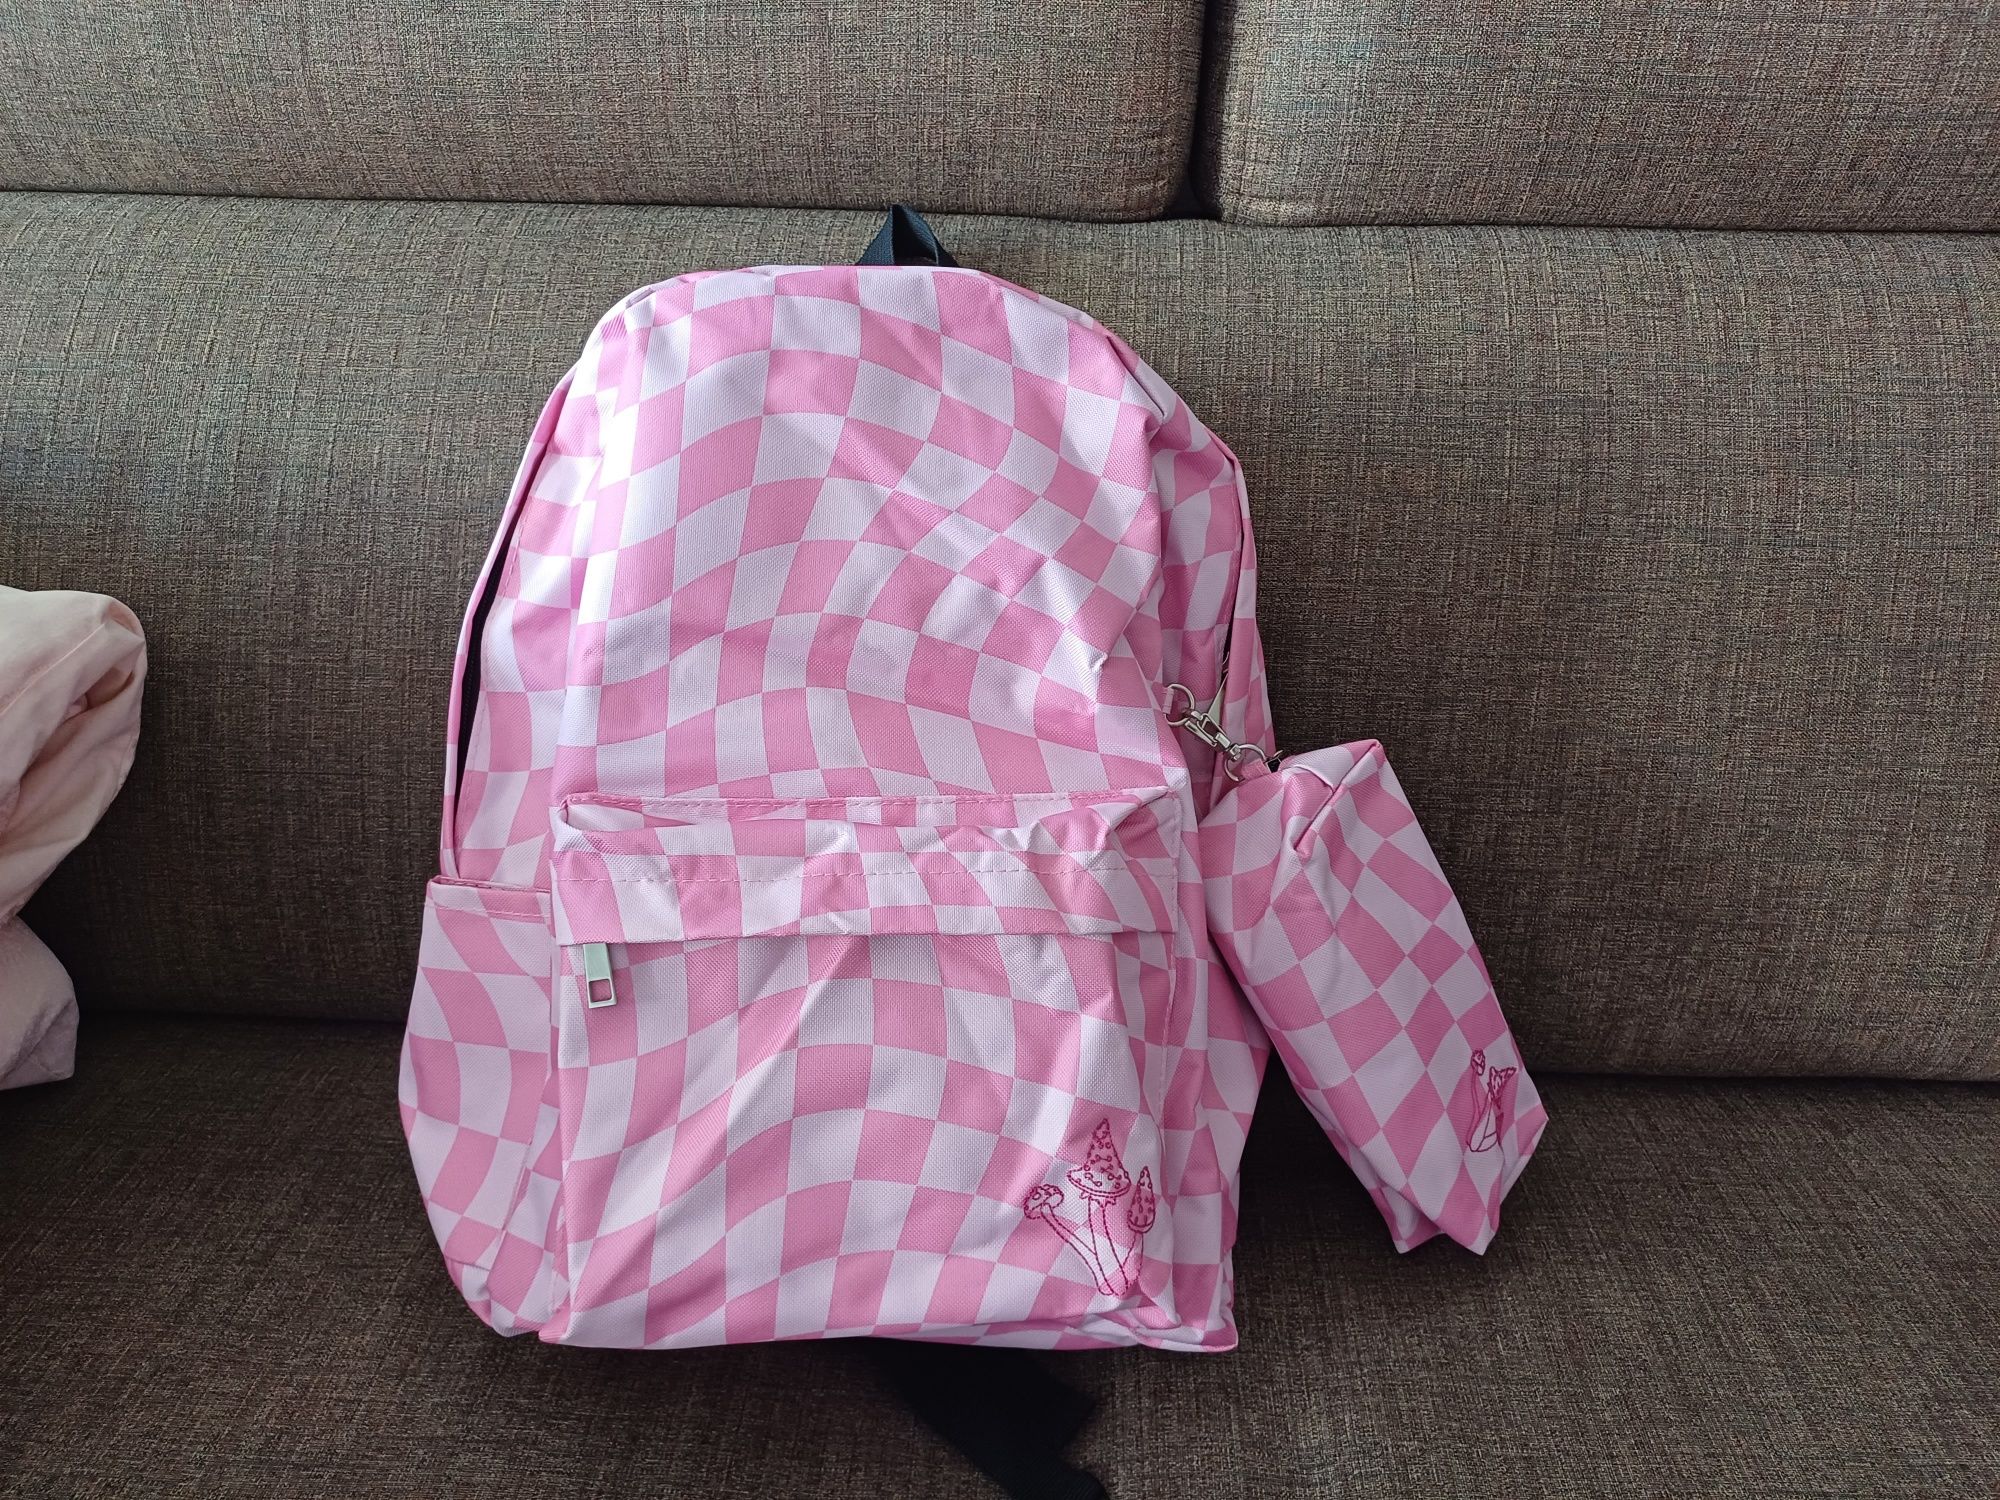 Plecak młodzieżowy  w różową  kratę   + piórnik nowy.